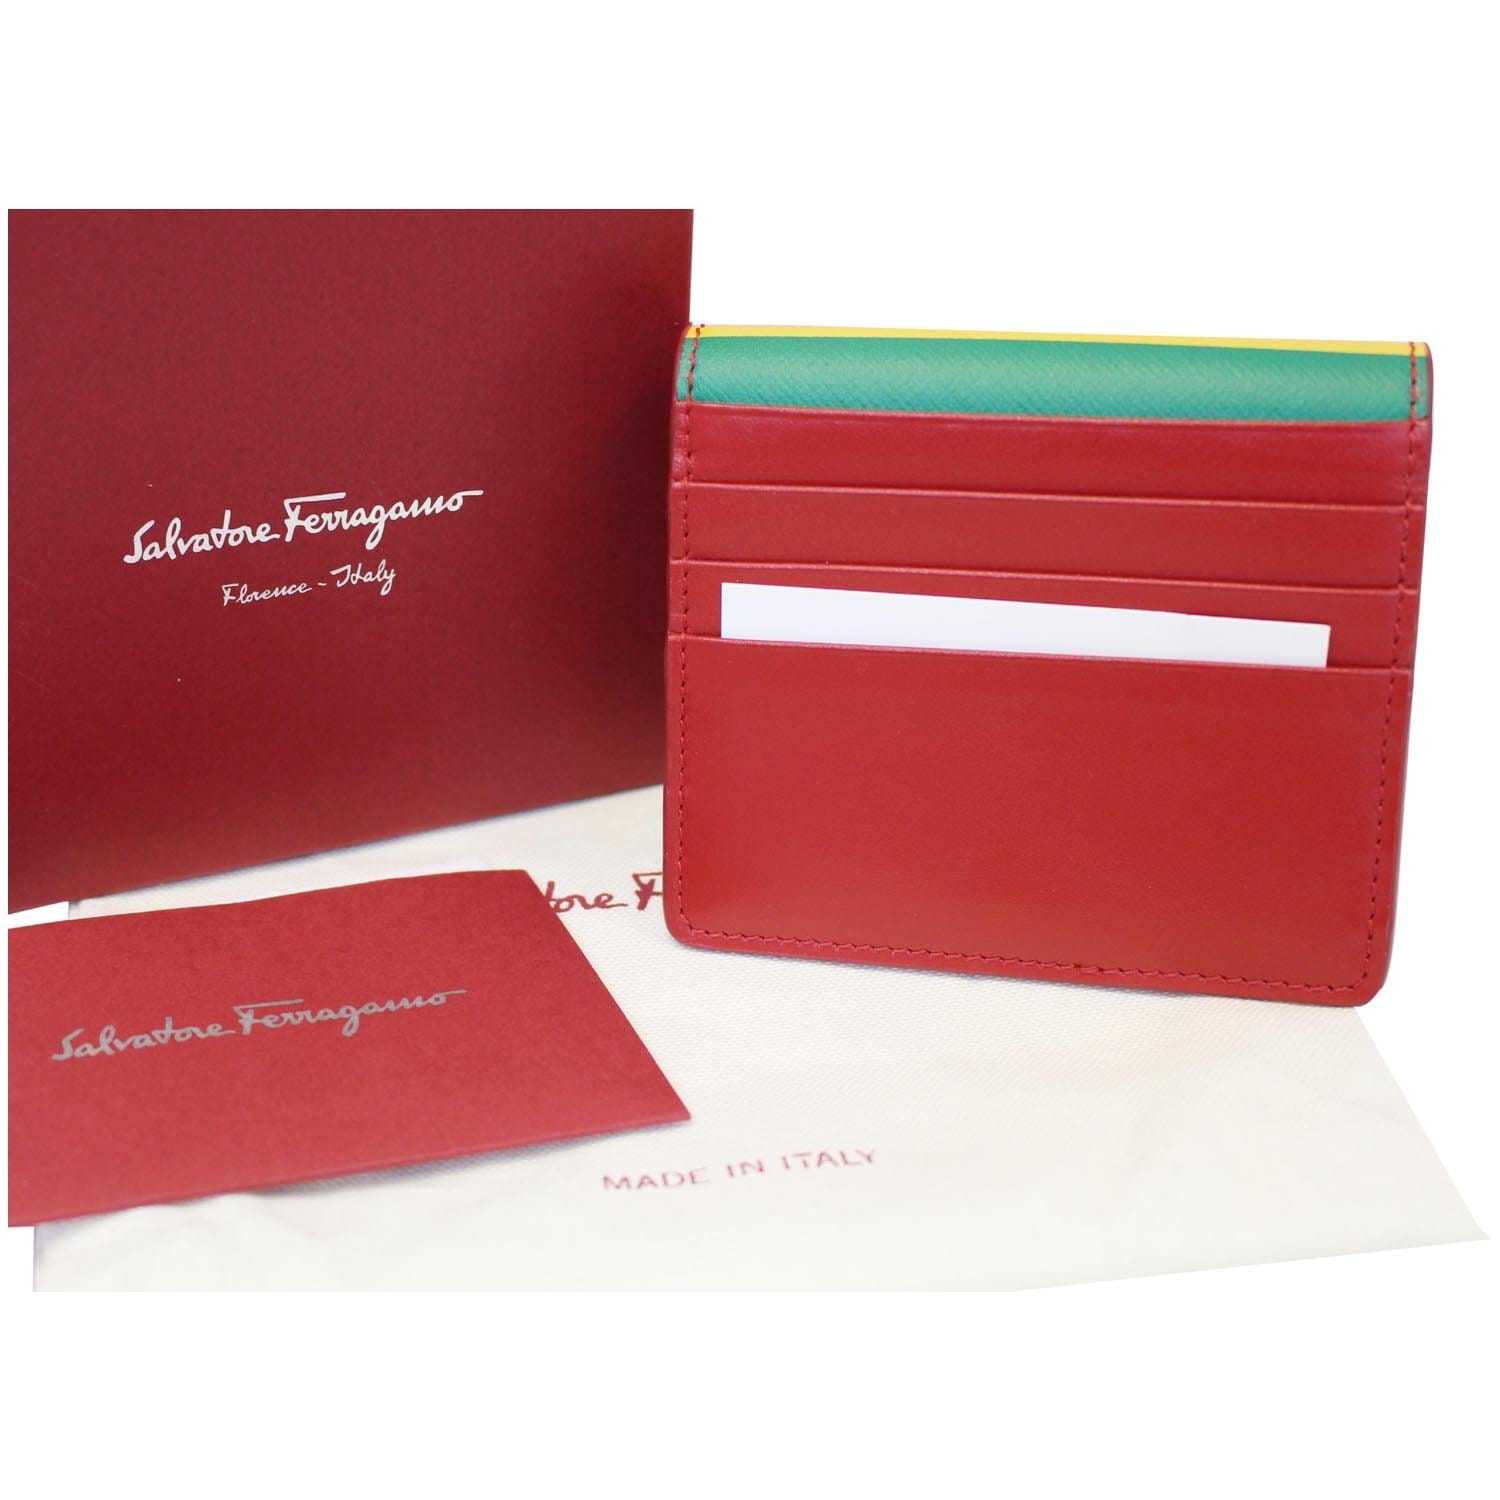 Salvatore Ferragamo Gancini Leather Travel Card Case With Strap